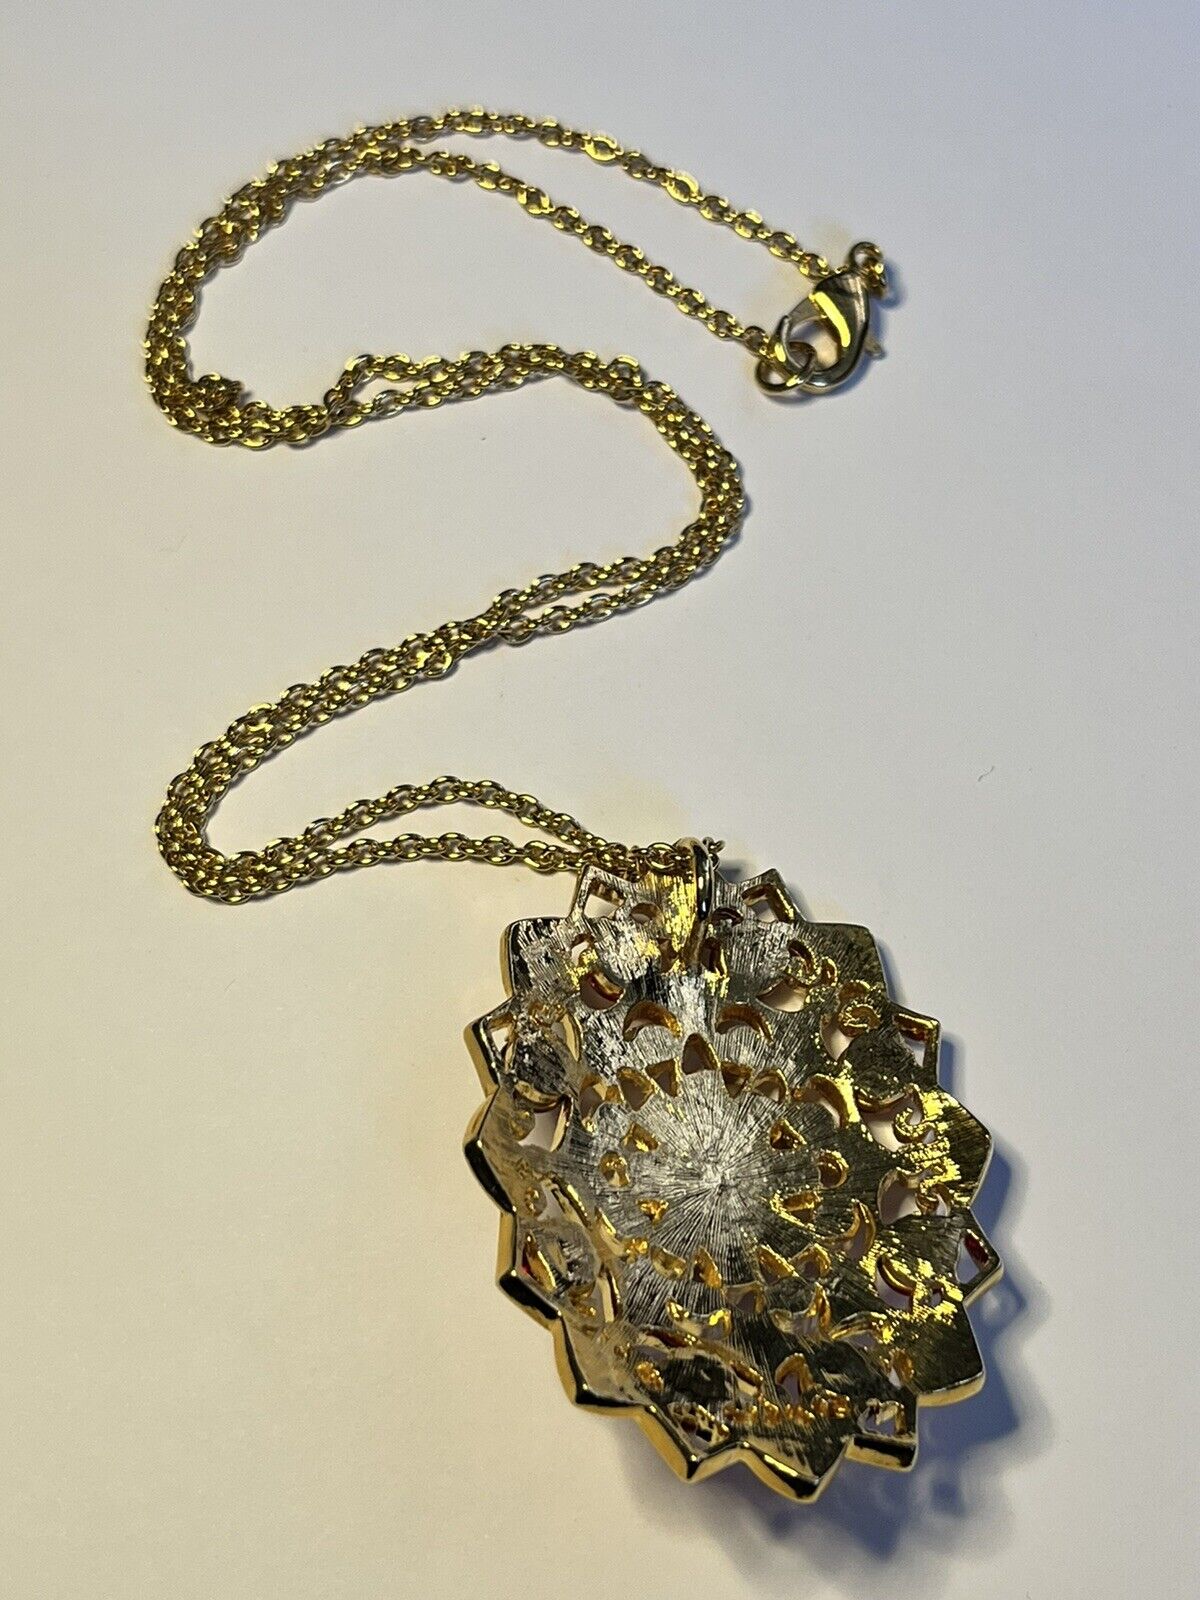 Vintage Red Cabochon Diamanté Gold Plated Pendant Necklace